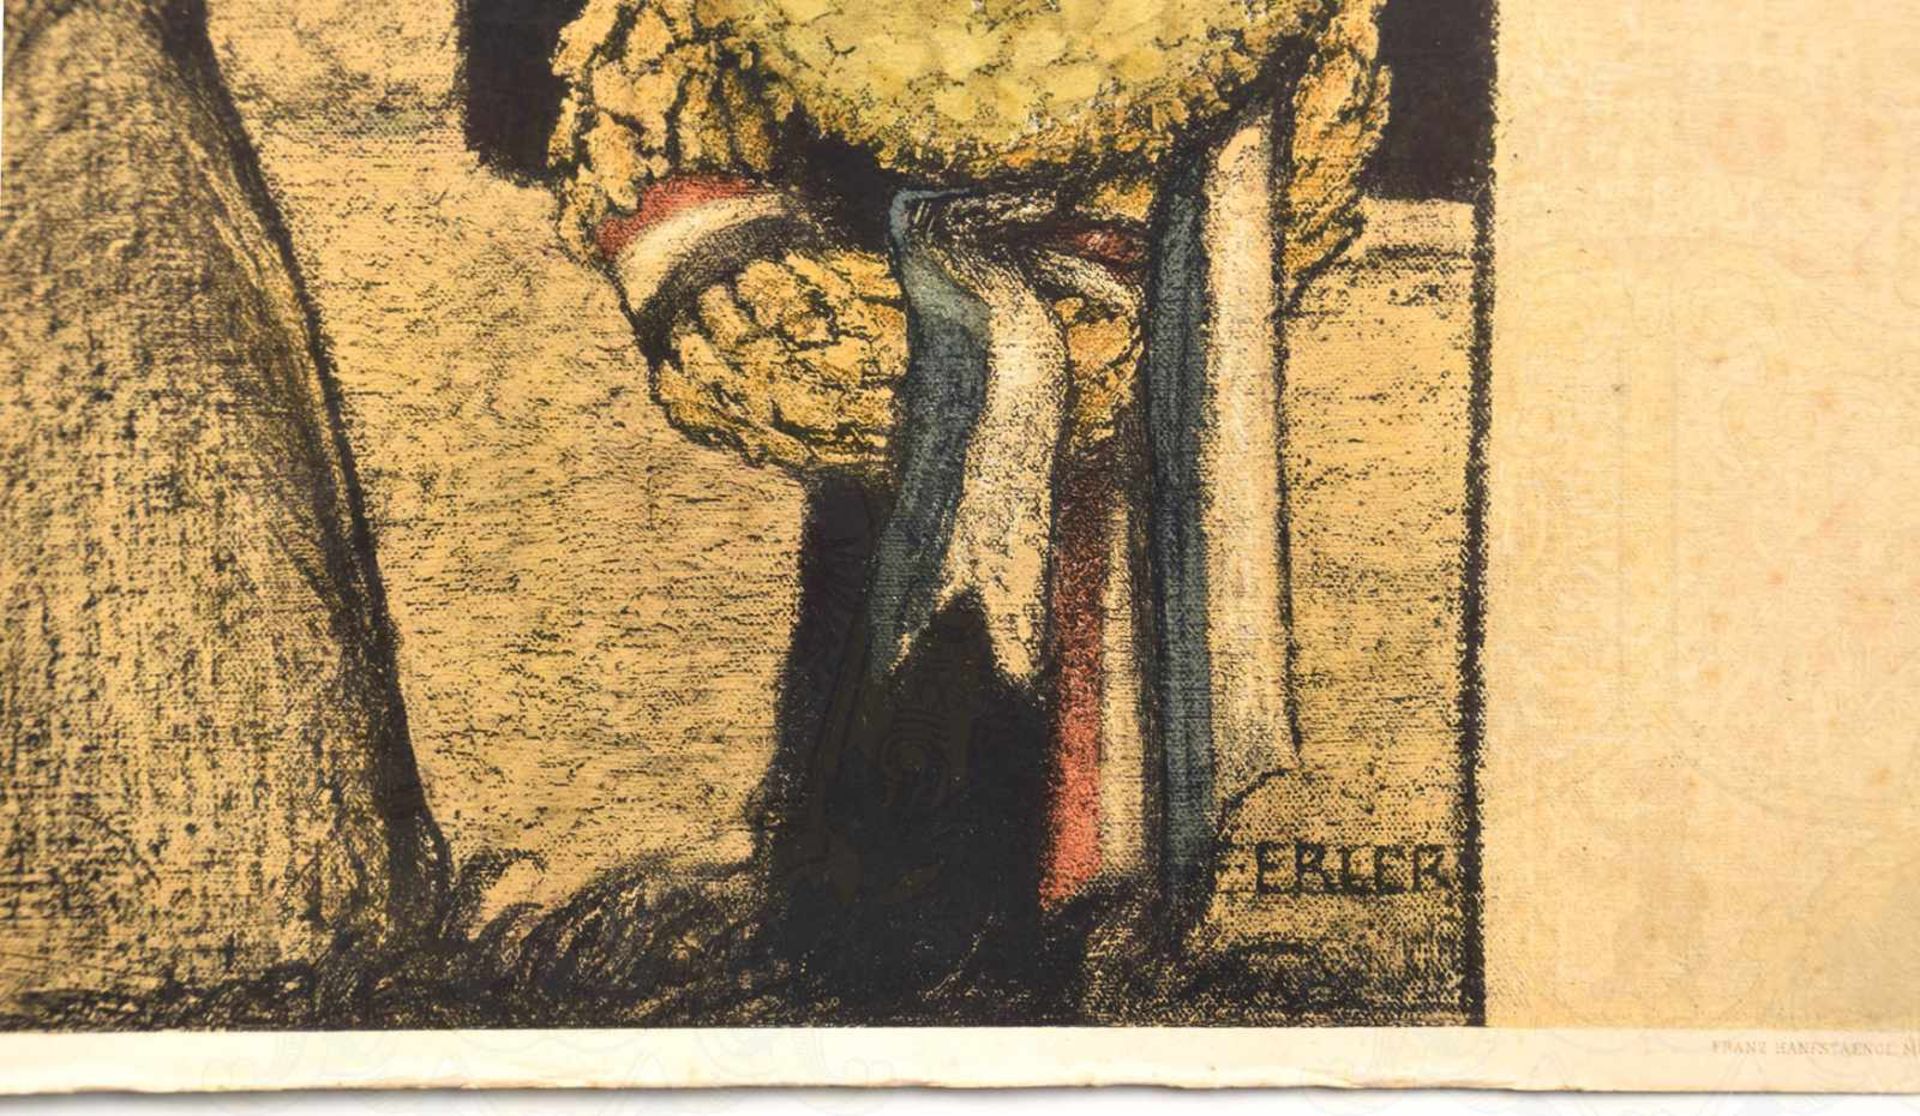 GEDENKBLATT EINES GEFALLENEN LANDWEHRMANN, v. 5. Bayr. Landwehr-IR, gefallen 22.9.1914, Farbdruck - Bild 2 aus 2